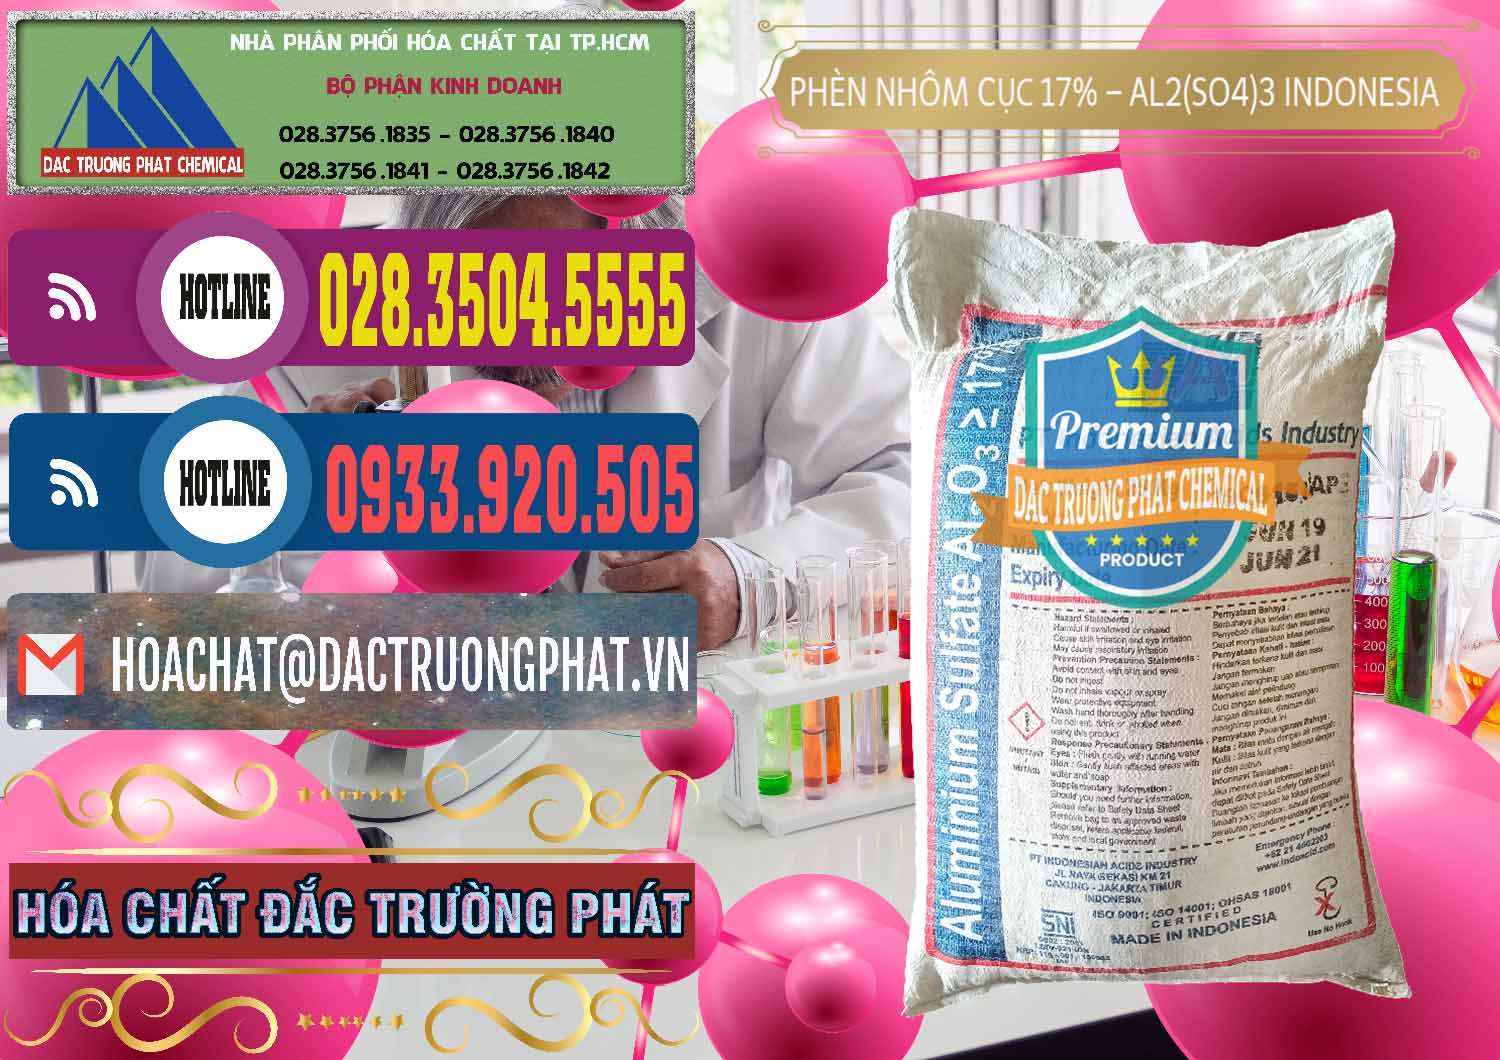 Nơi chuyên bán _ cung cấp Phèn Nhôm Cục - Al2(SO4)3 17% bao 25kg Indonesia - 0115 - Cung cấp và bán hóa chất tại TP.HCM - muabanhoachat.com.vn